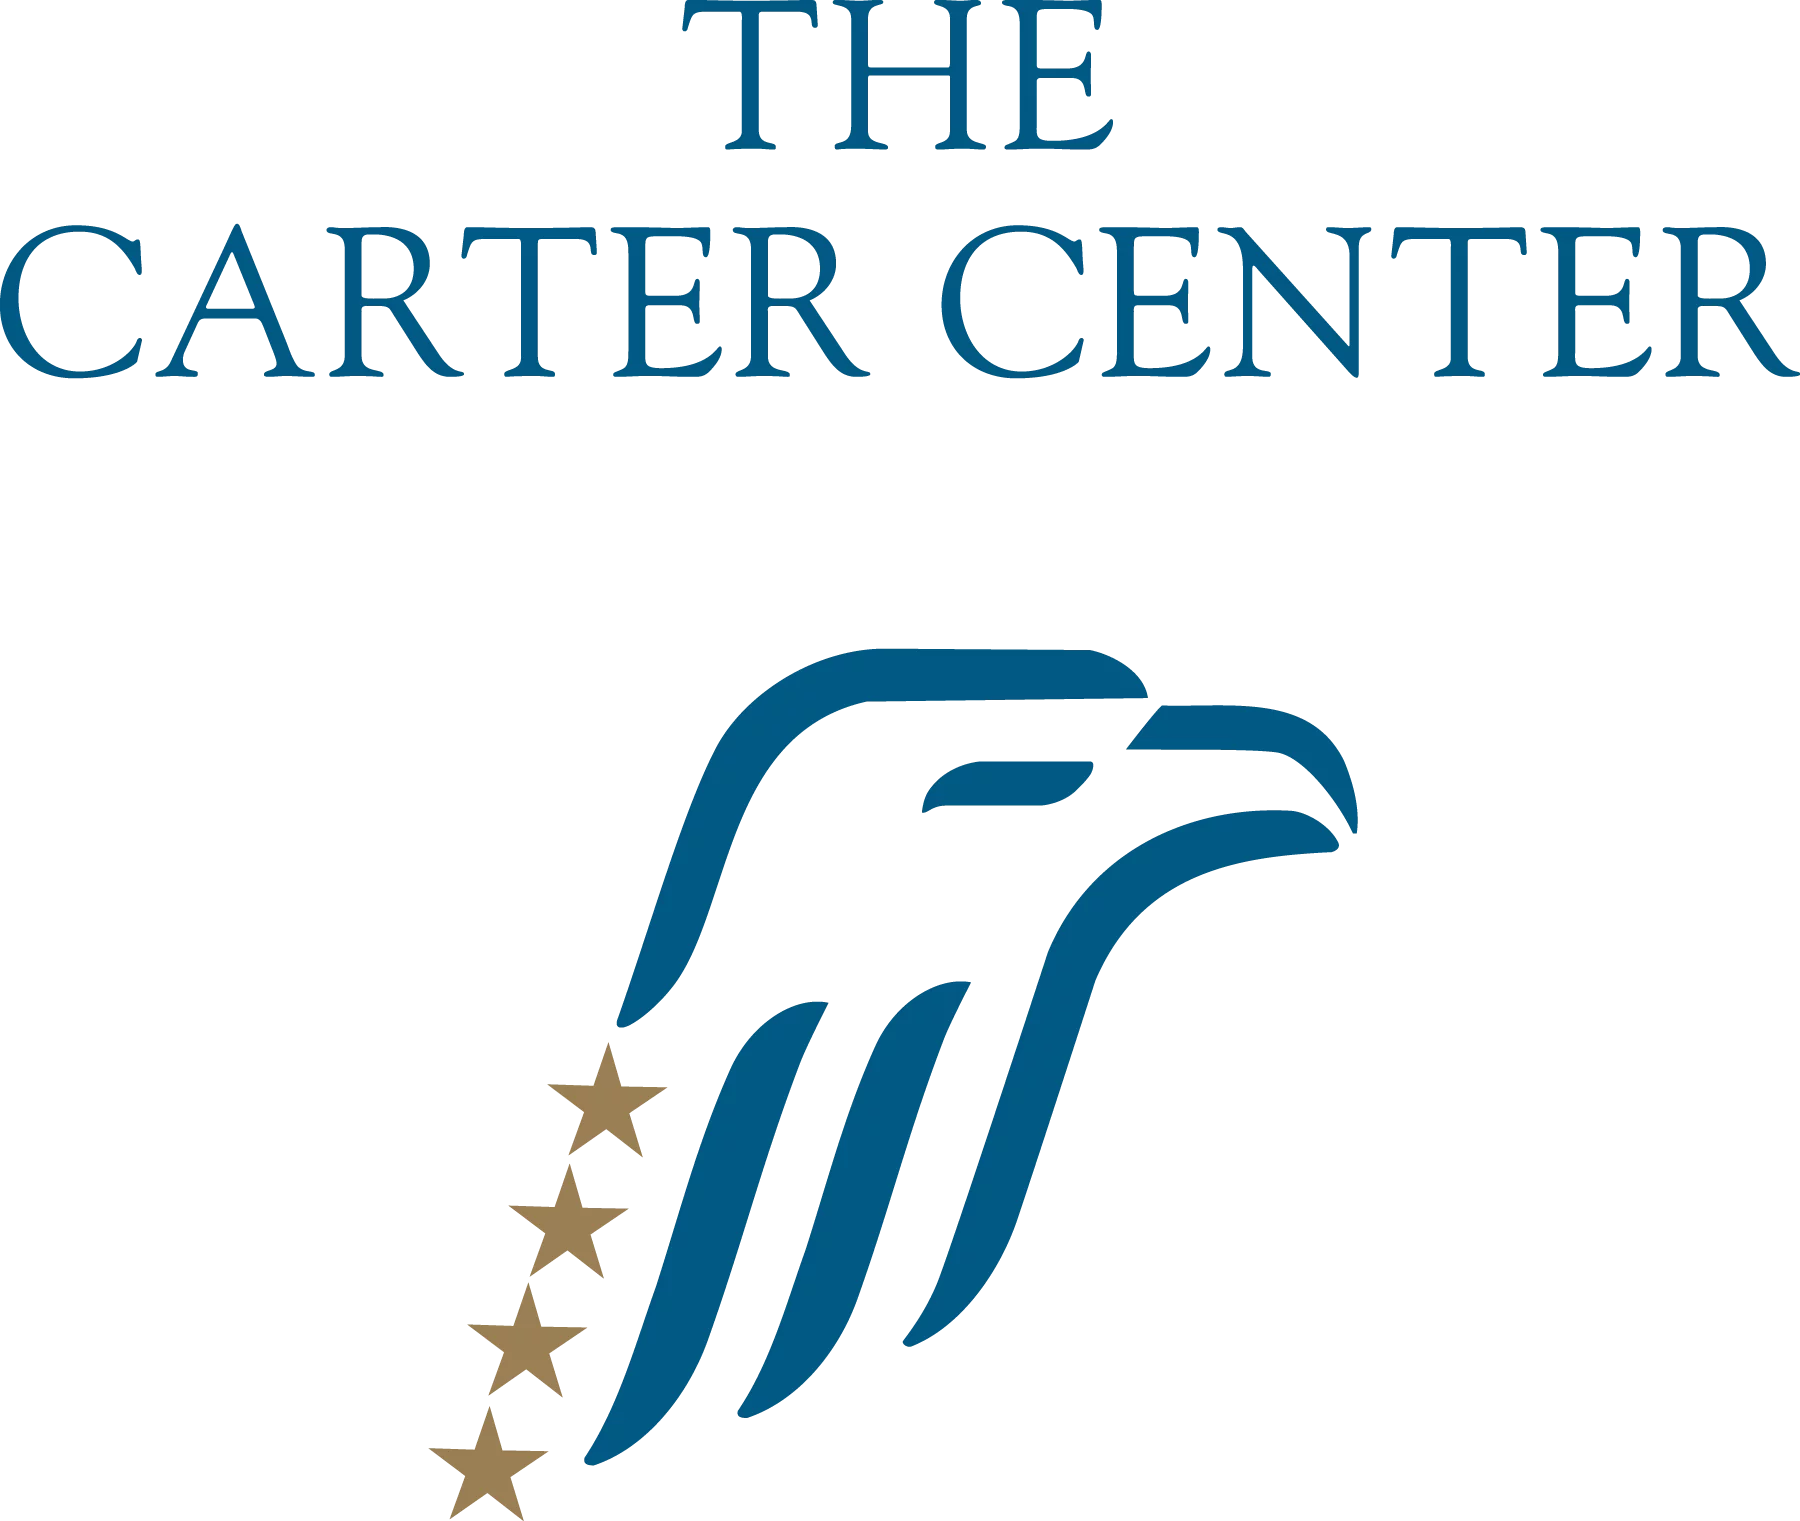 LE CENTRE CARTER recrute pour plusieurs profils à Guélendeng, N’Djamena et Sarh/Tchad